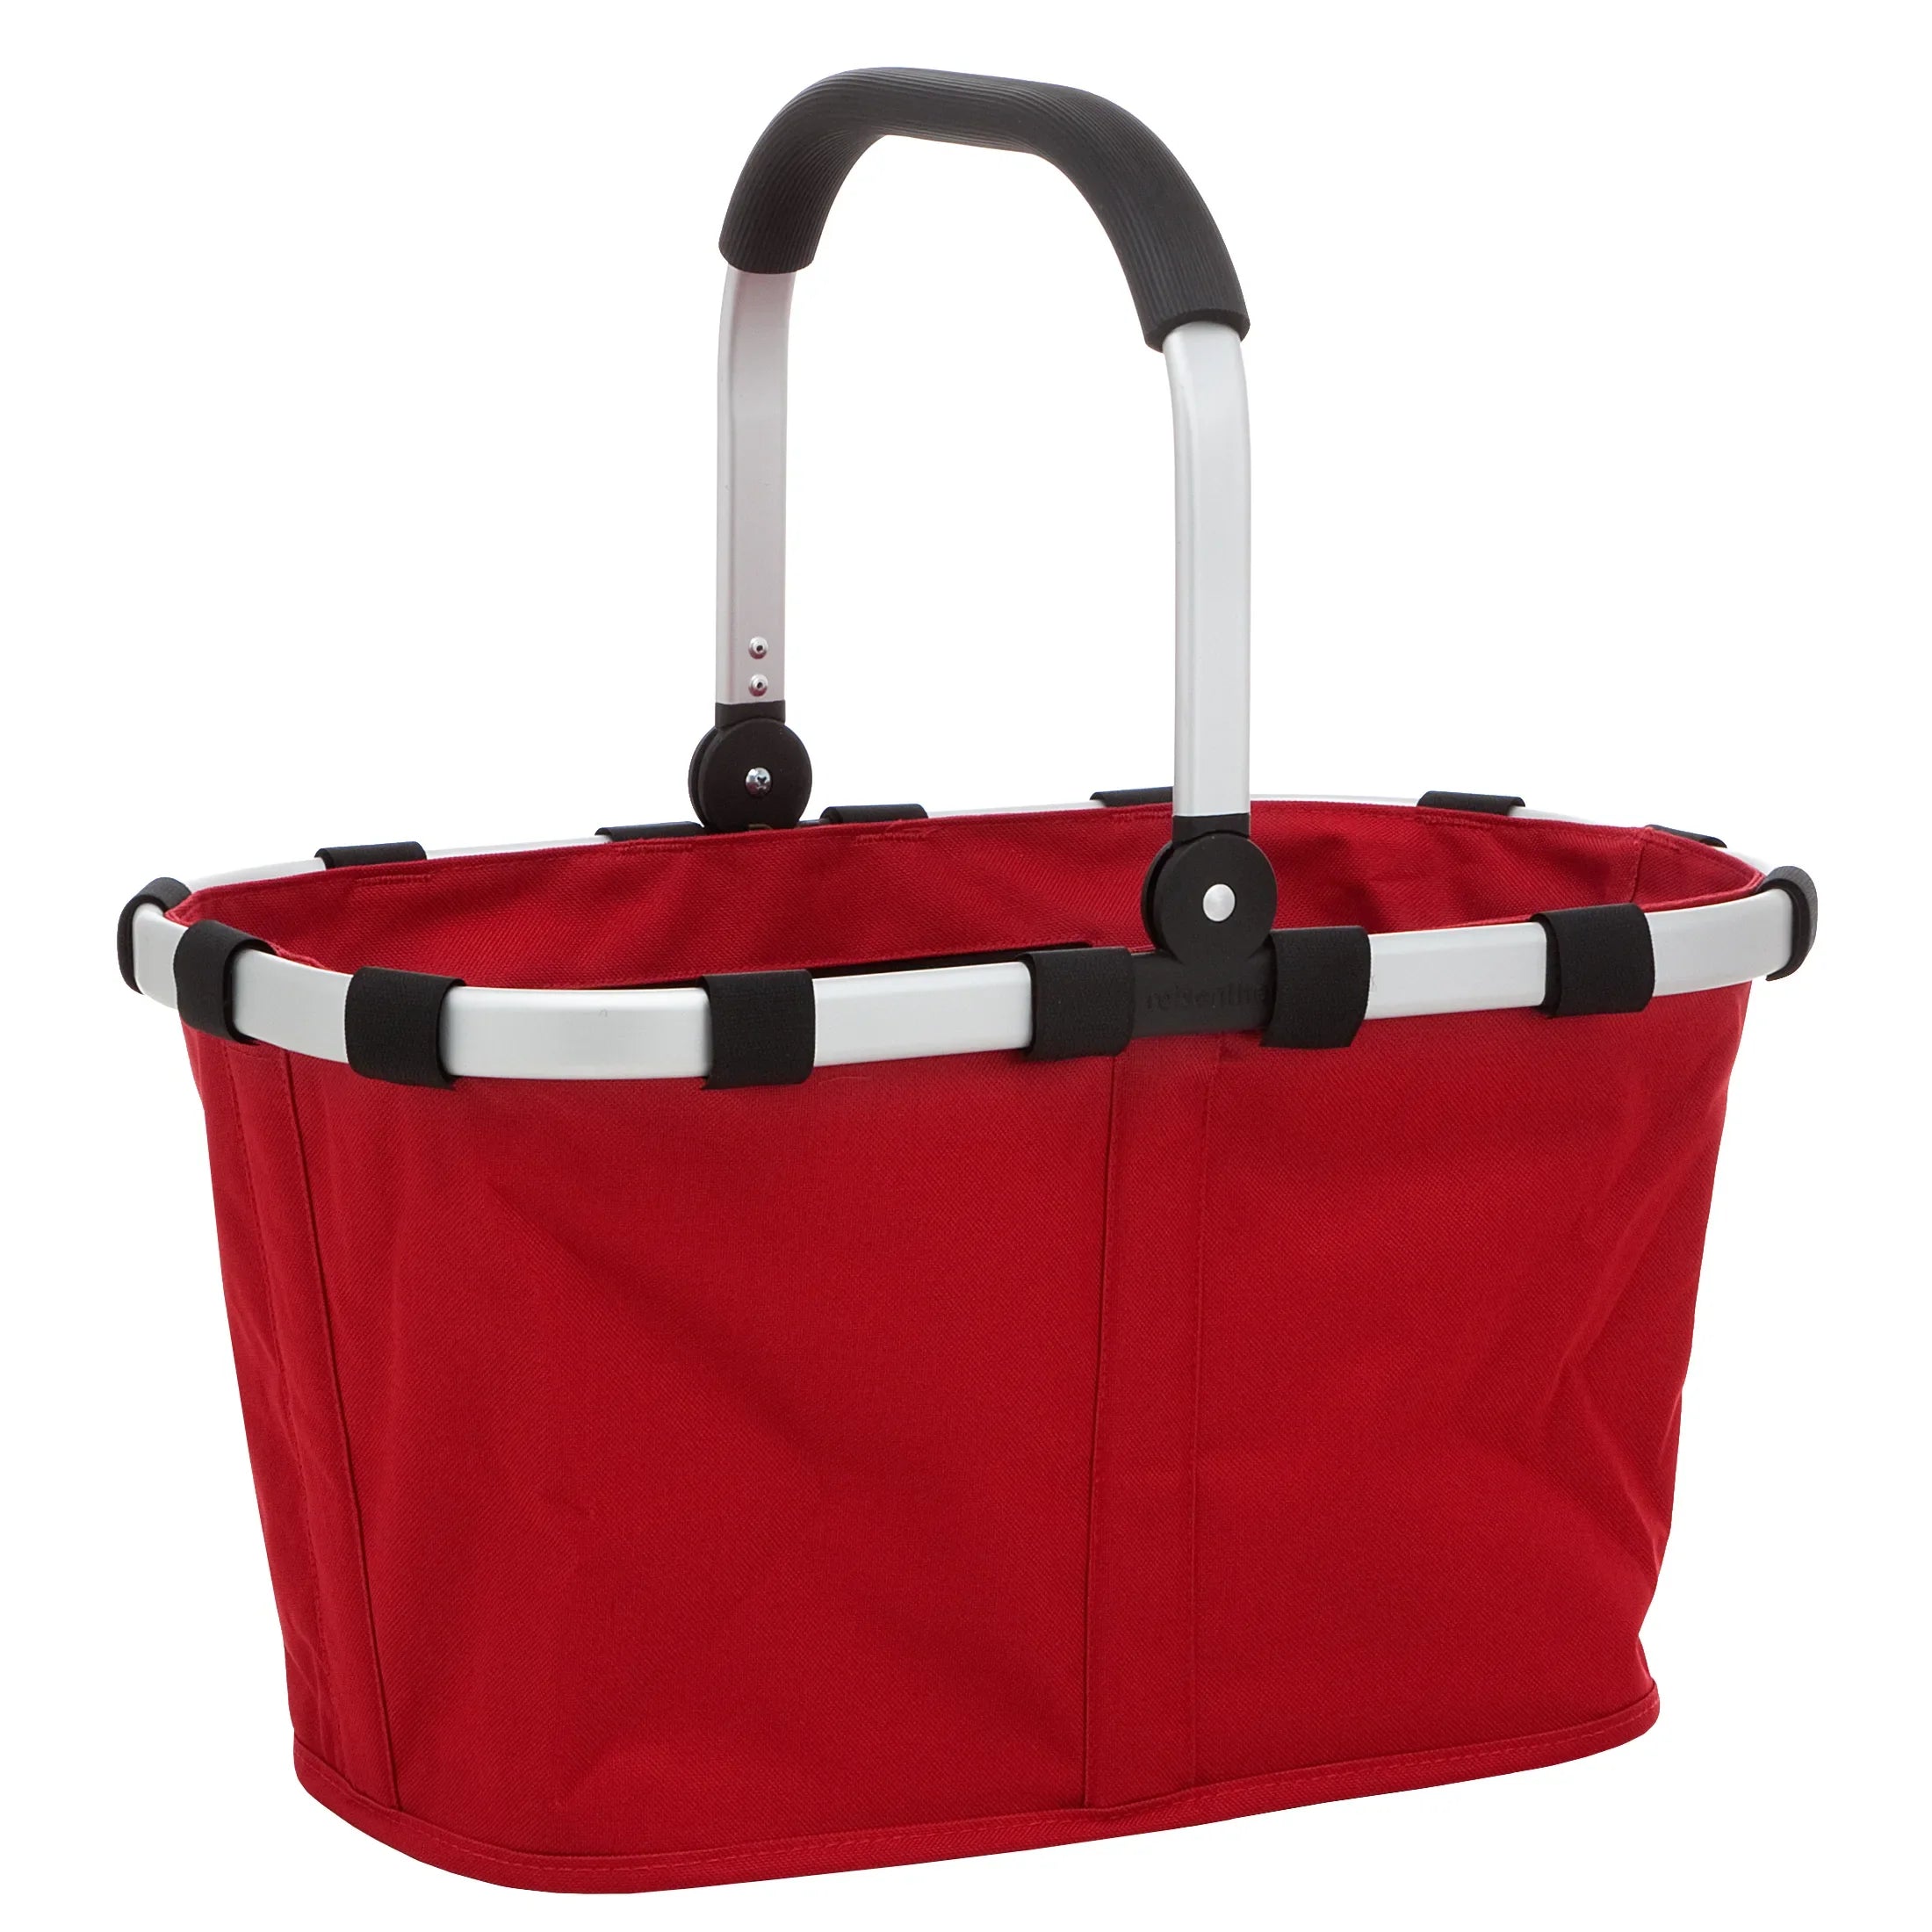 Reisenthel Shopping Carrybag Einkaufskorb 48 cm - red